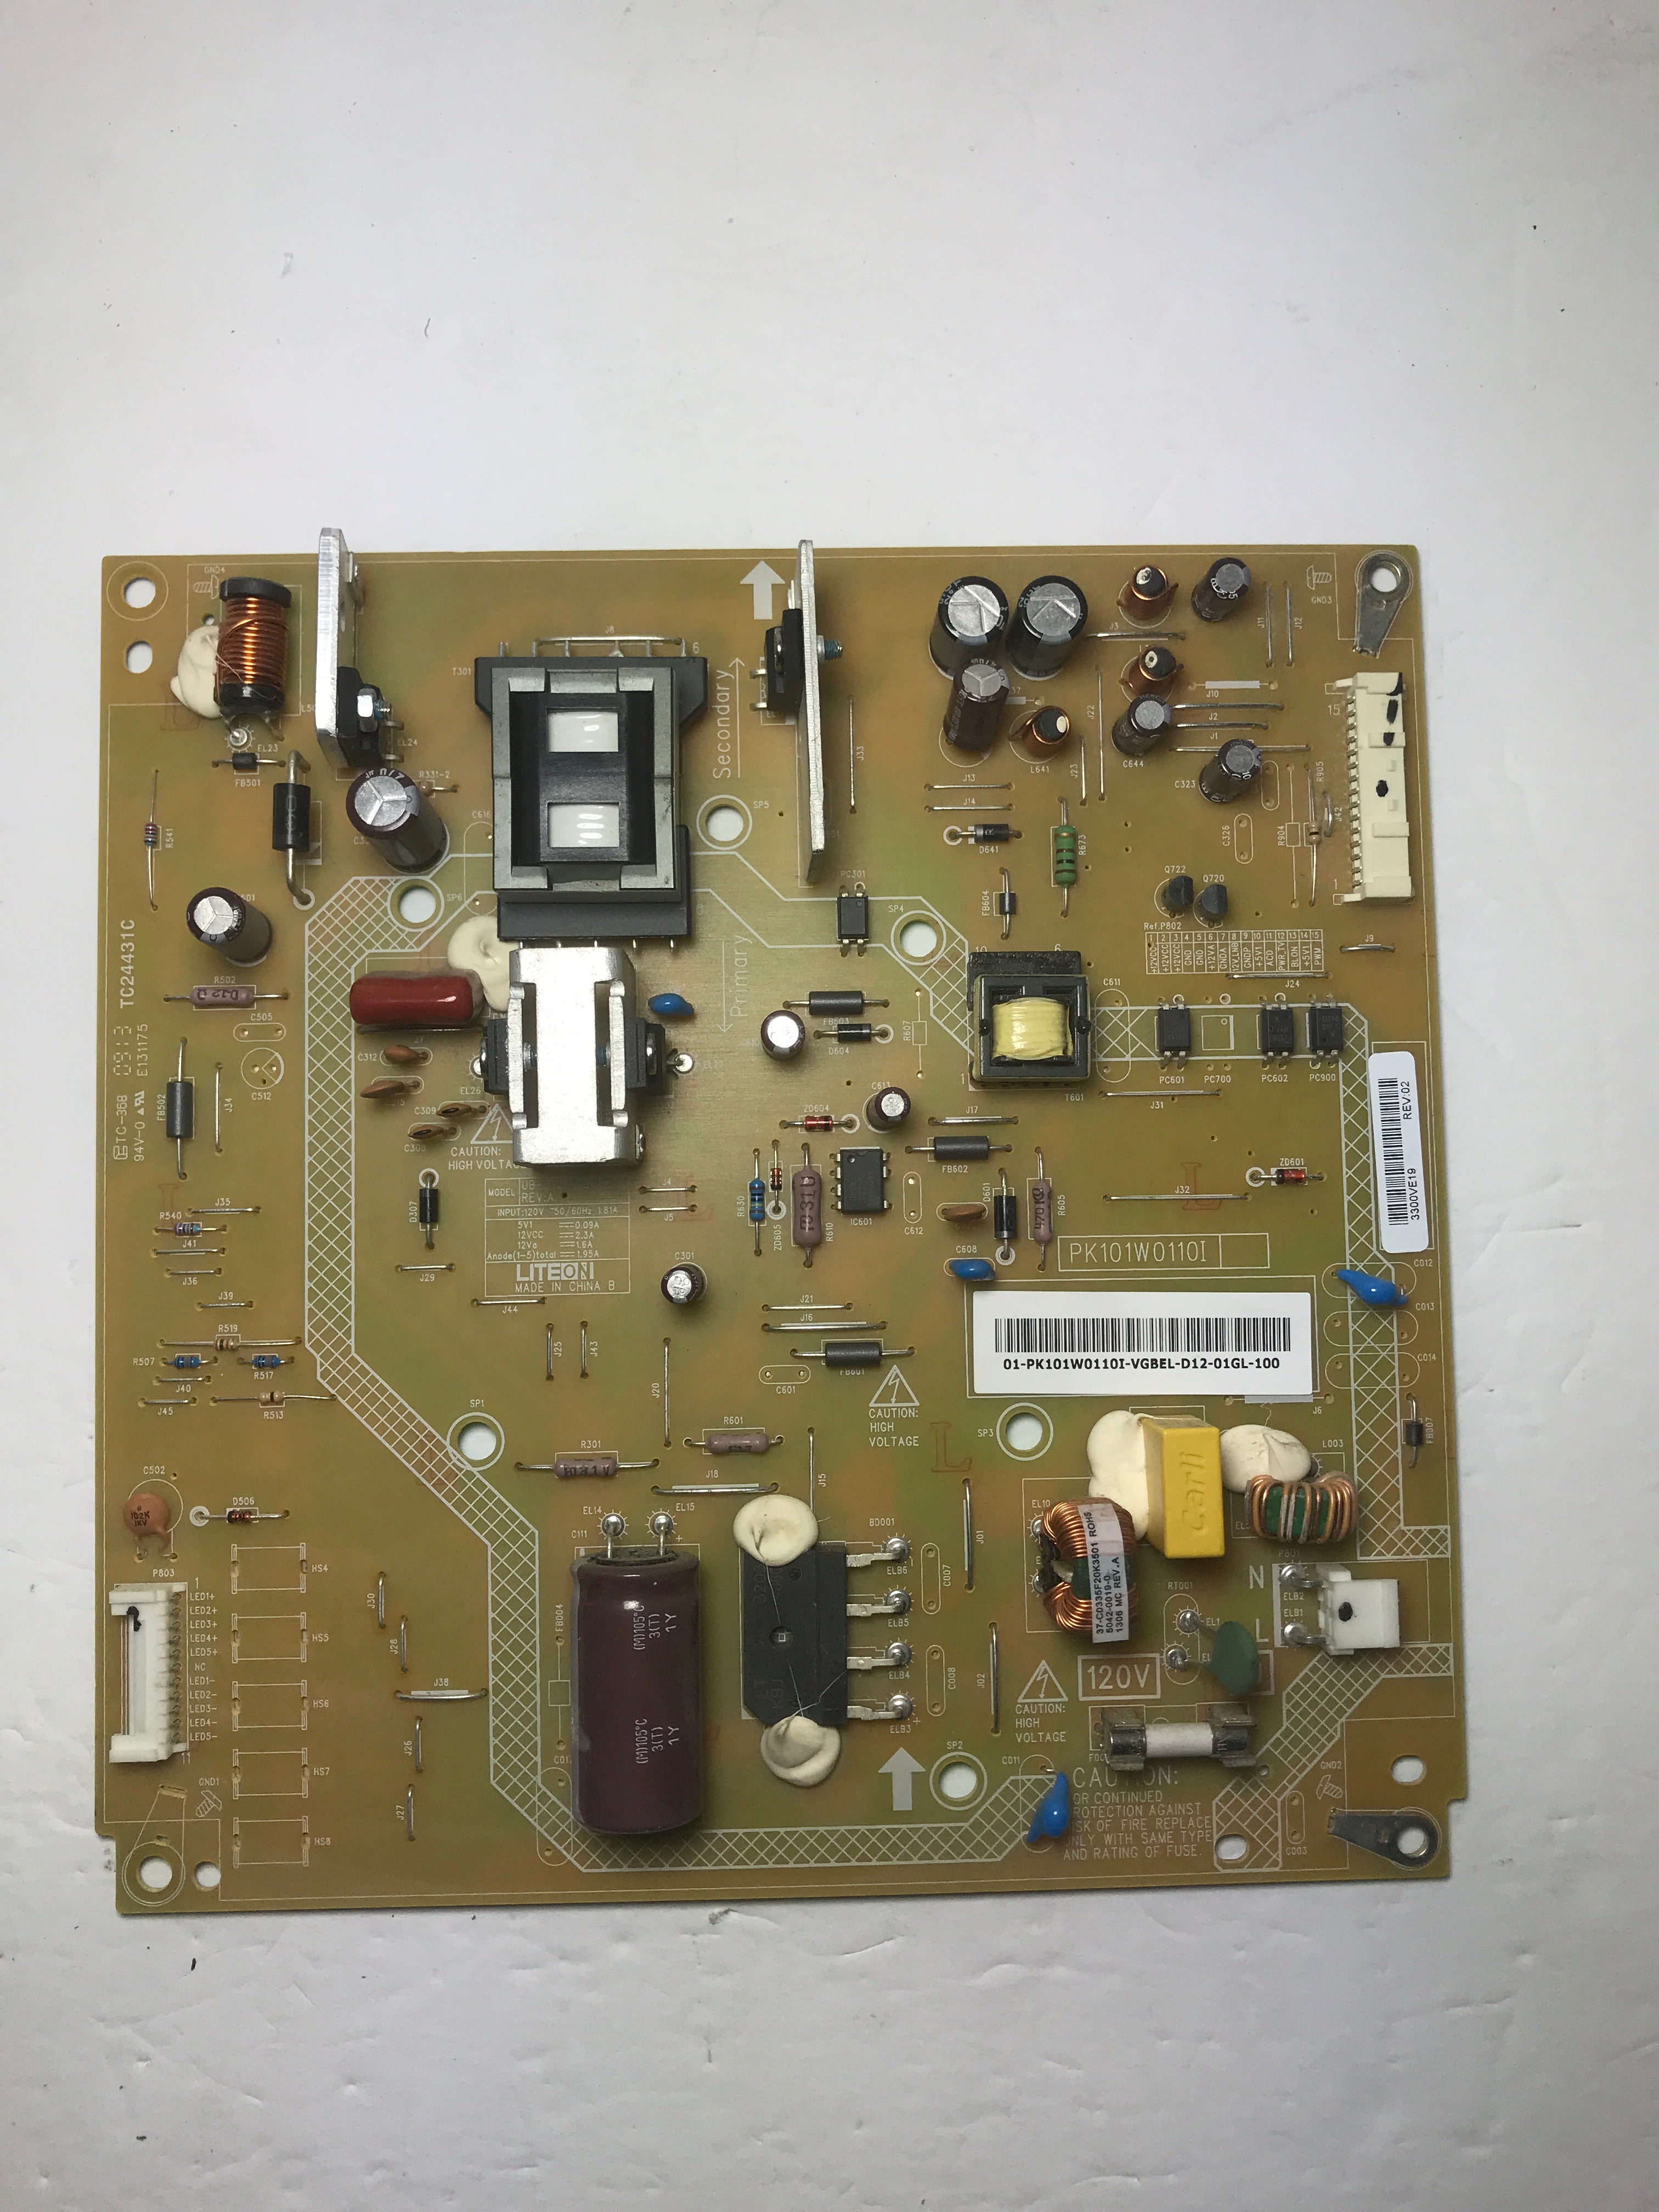 Toshiba PK101W0110I (PK101W0110I) Power Supply / LED Board